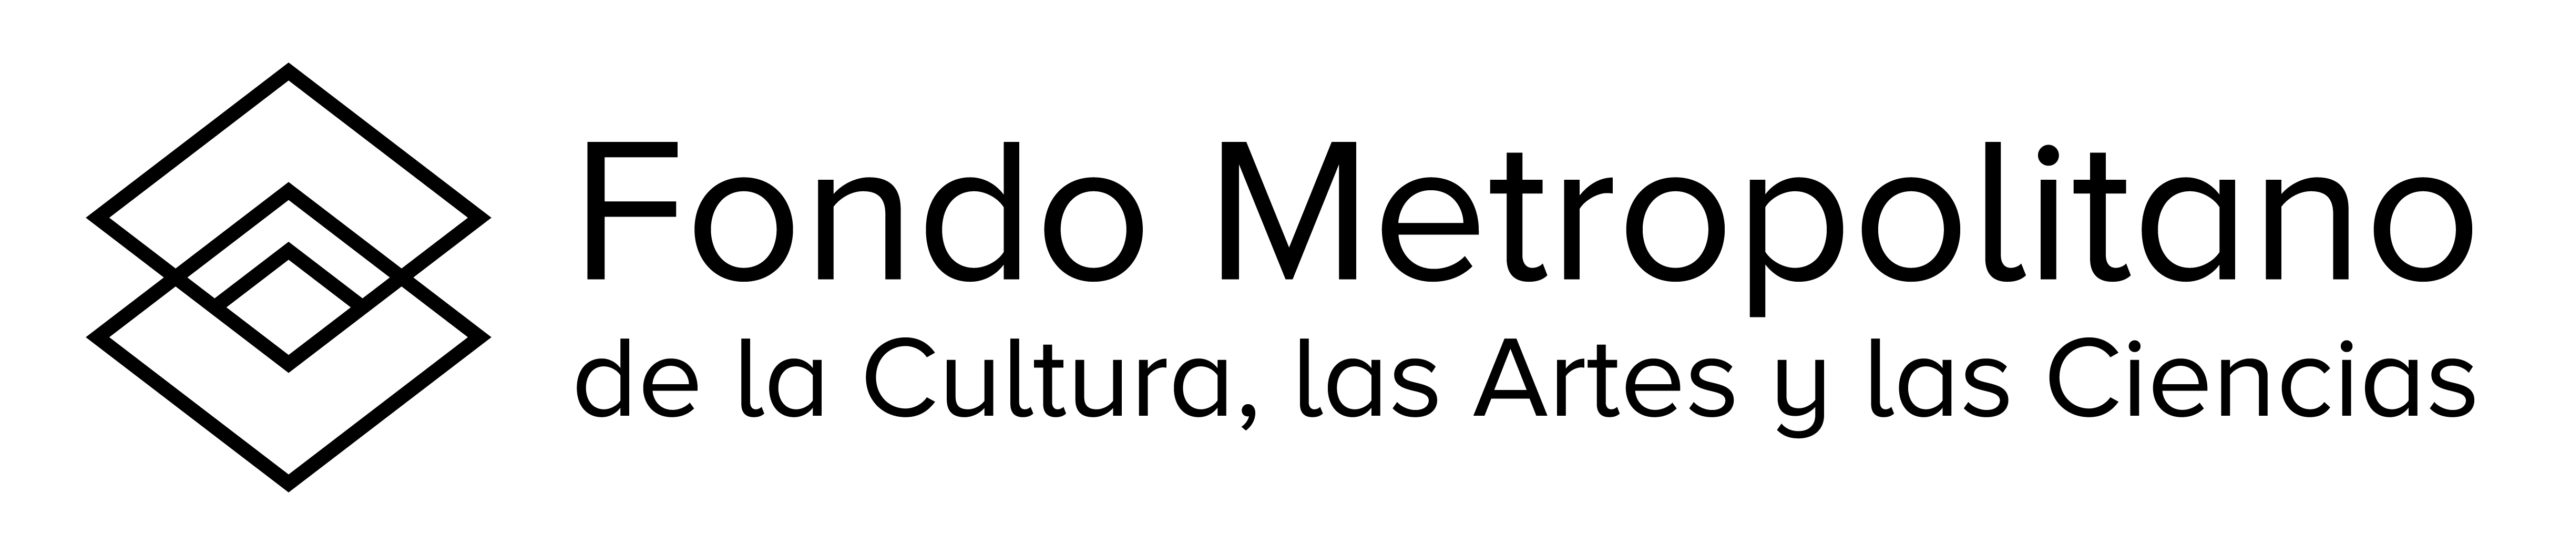 Fondo Metropolitano de la Cultura, las Artes y las Ciencias